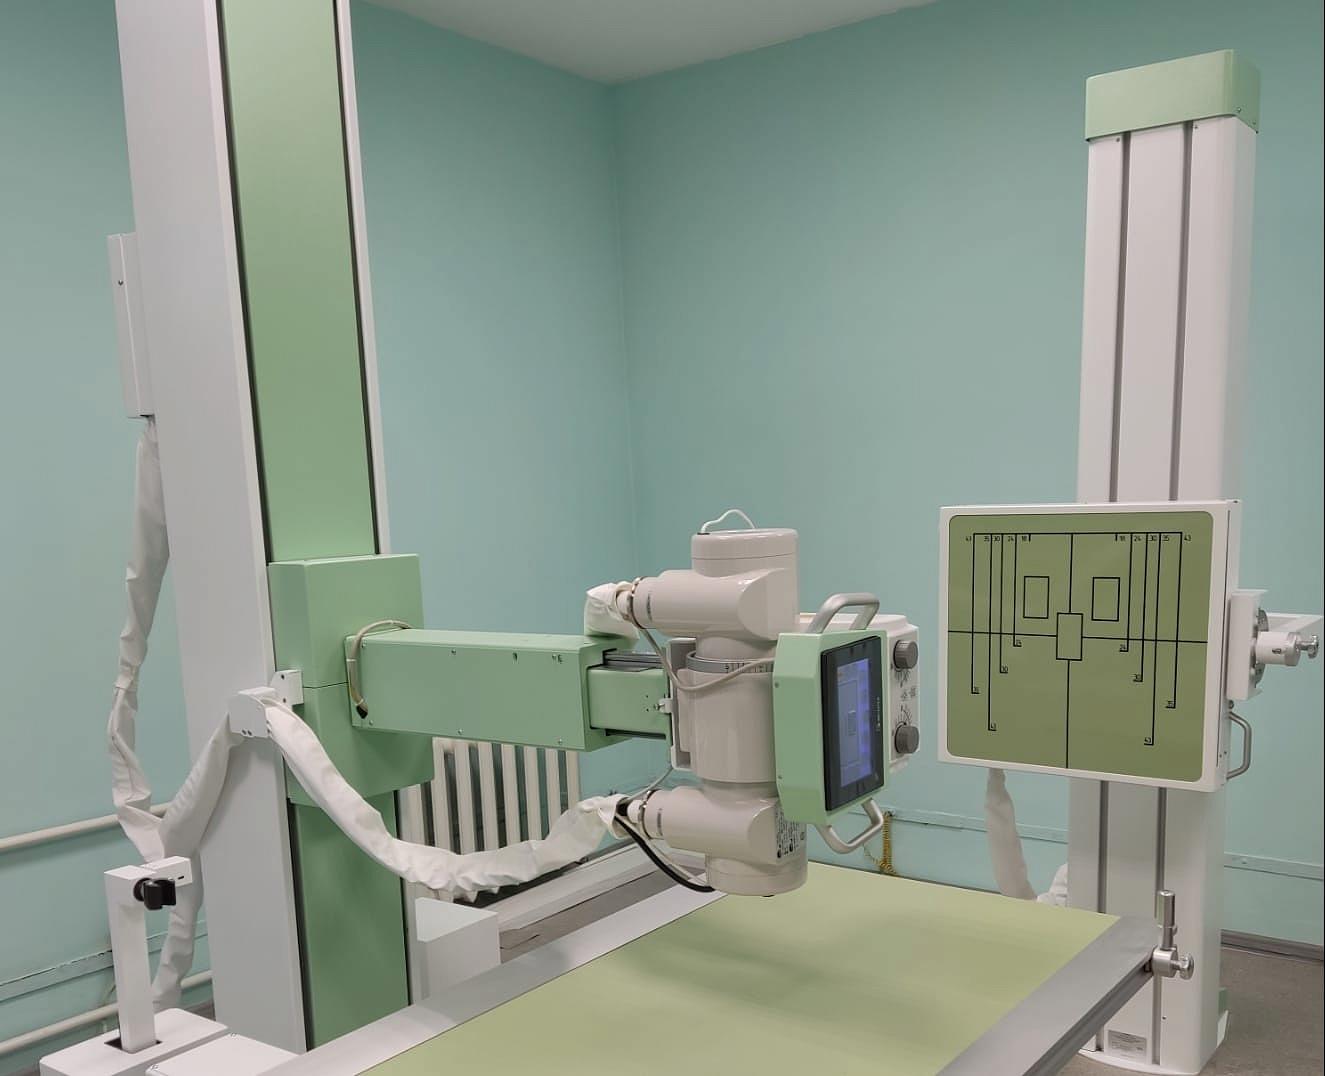 Более пятидесяти тысяч исследований выполнено за три года на новом рентген-аппарате в Зеленоградске